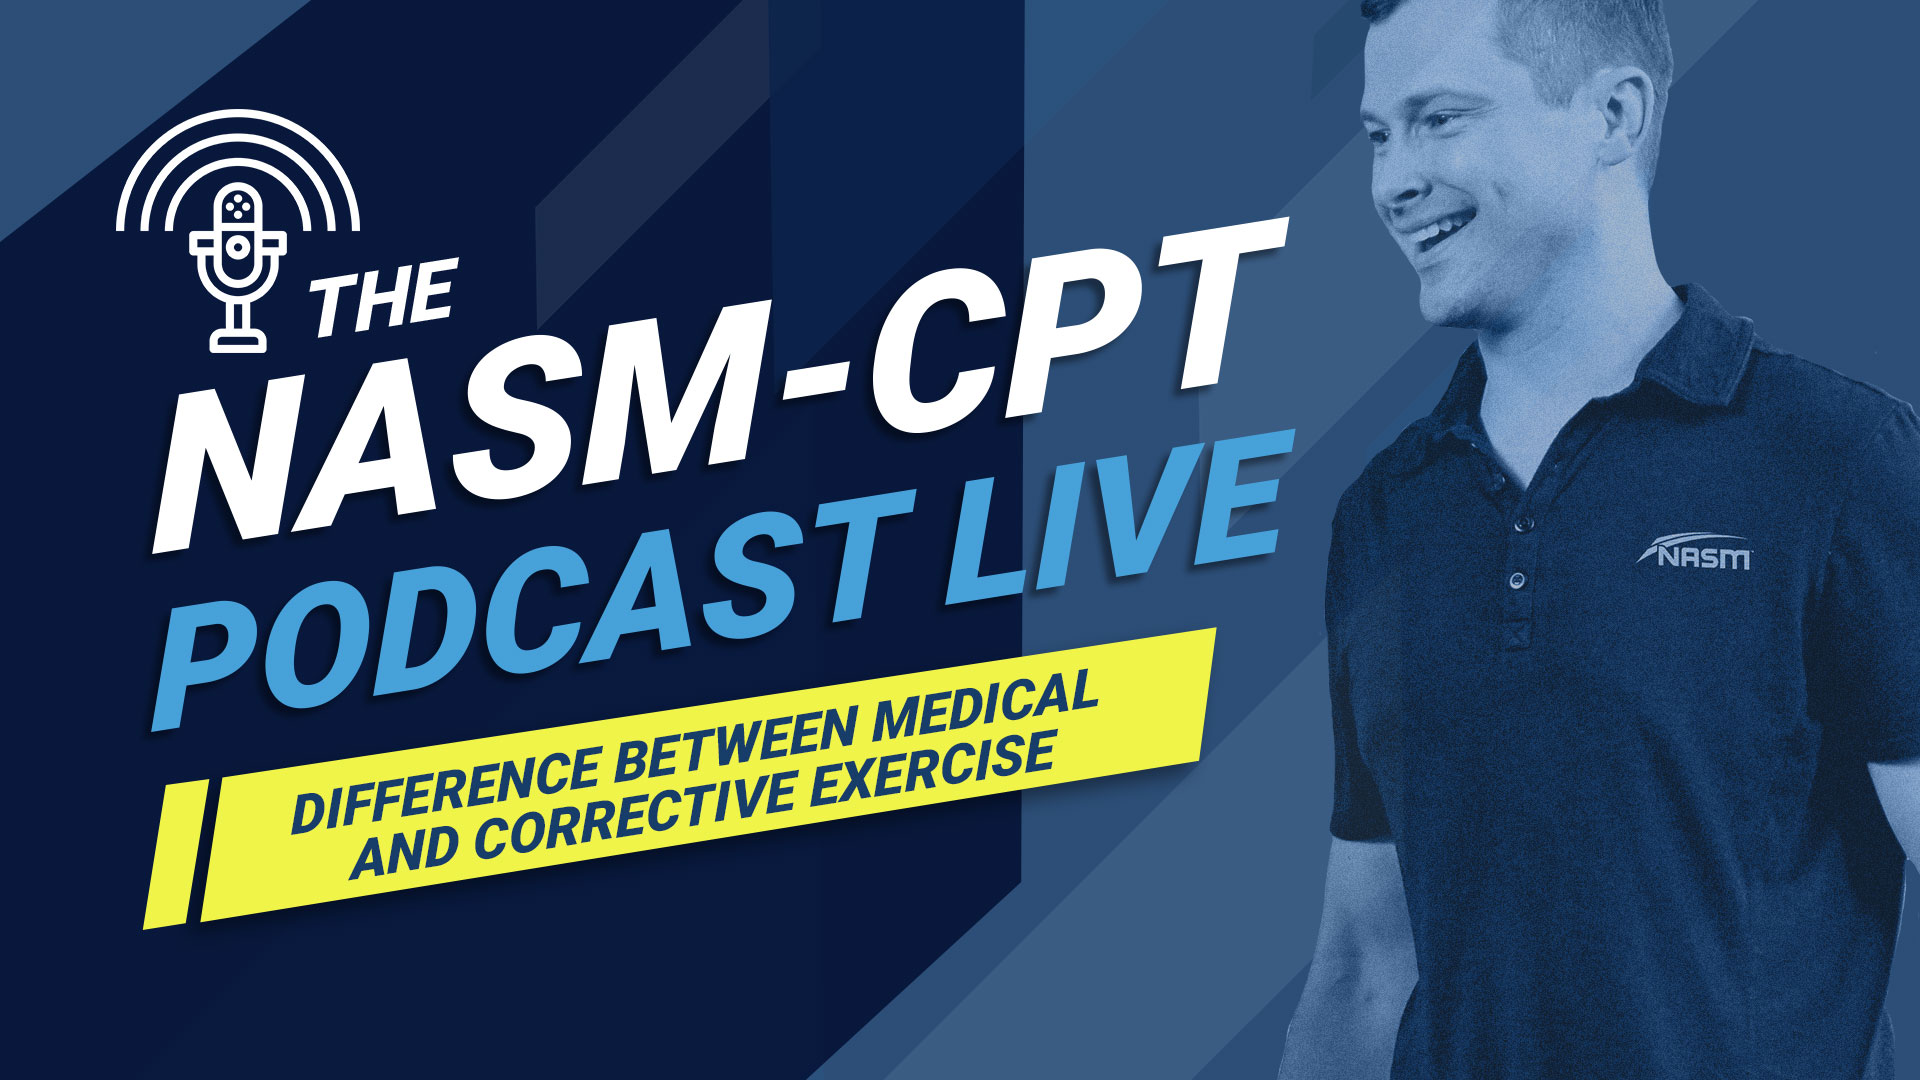 NASM-CPT关于矫正与医疗运动的播客